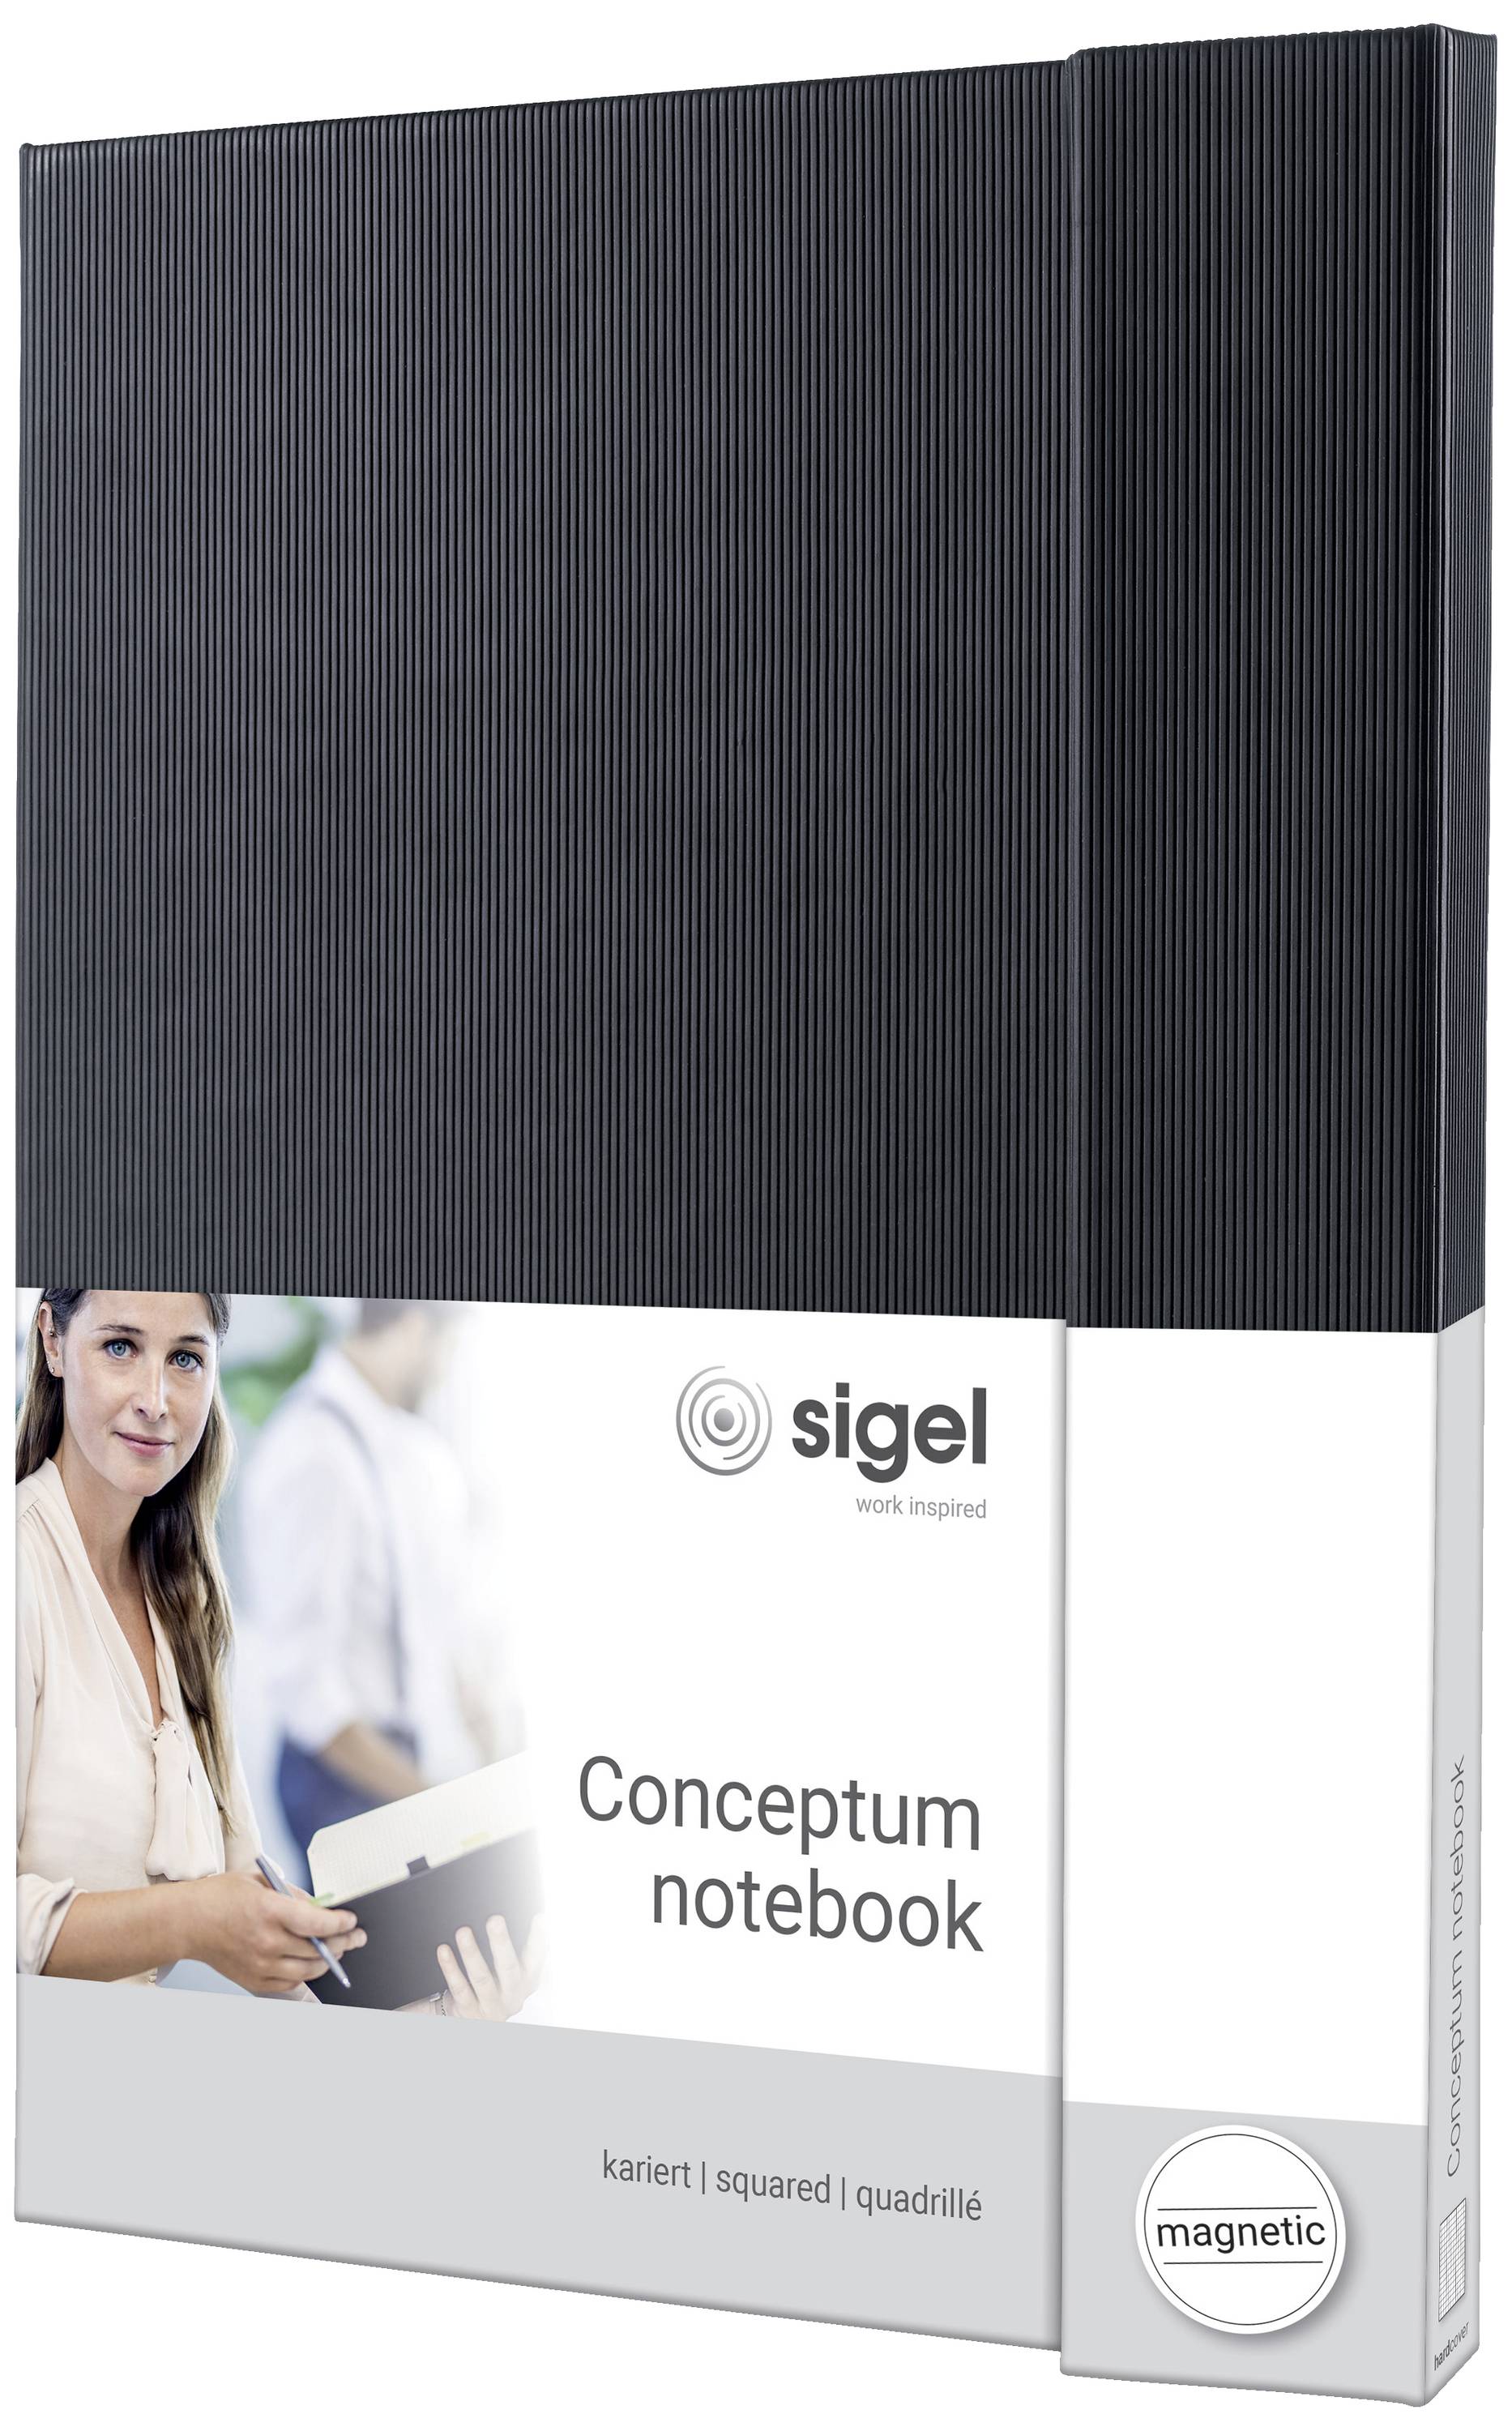 SIGEL Notizbuch CONCEPTUM®, schwarz, Hardcover, kariert, ähnlich A4, Magnetverschluss, mit zahlrei